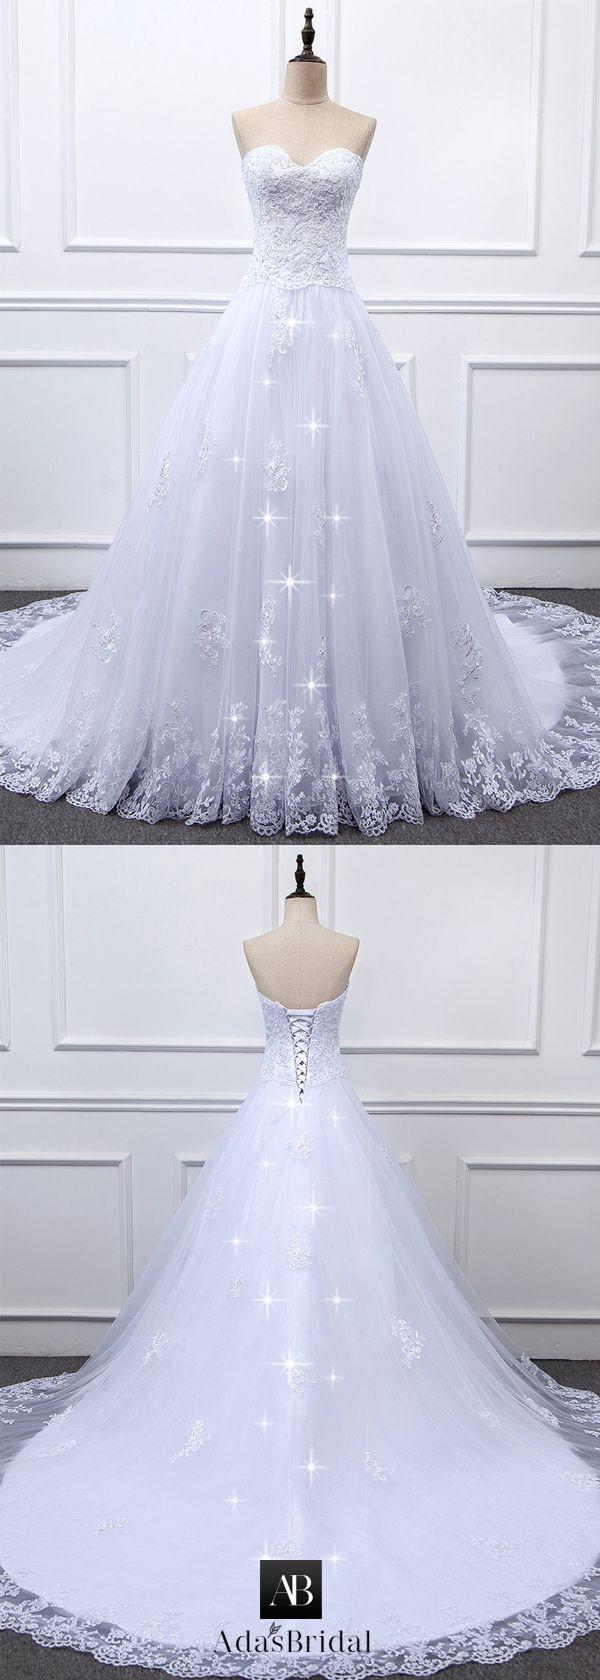 زفاف - Dream Dress